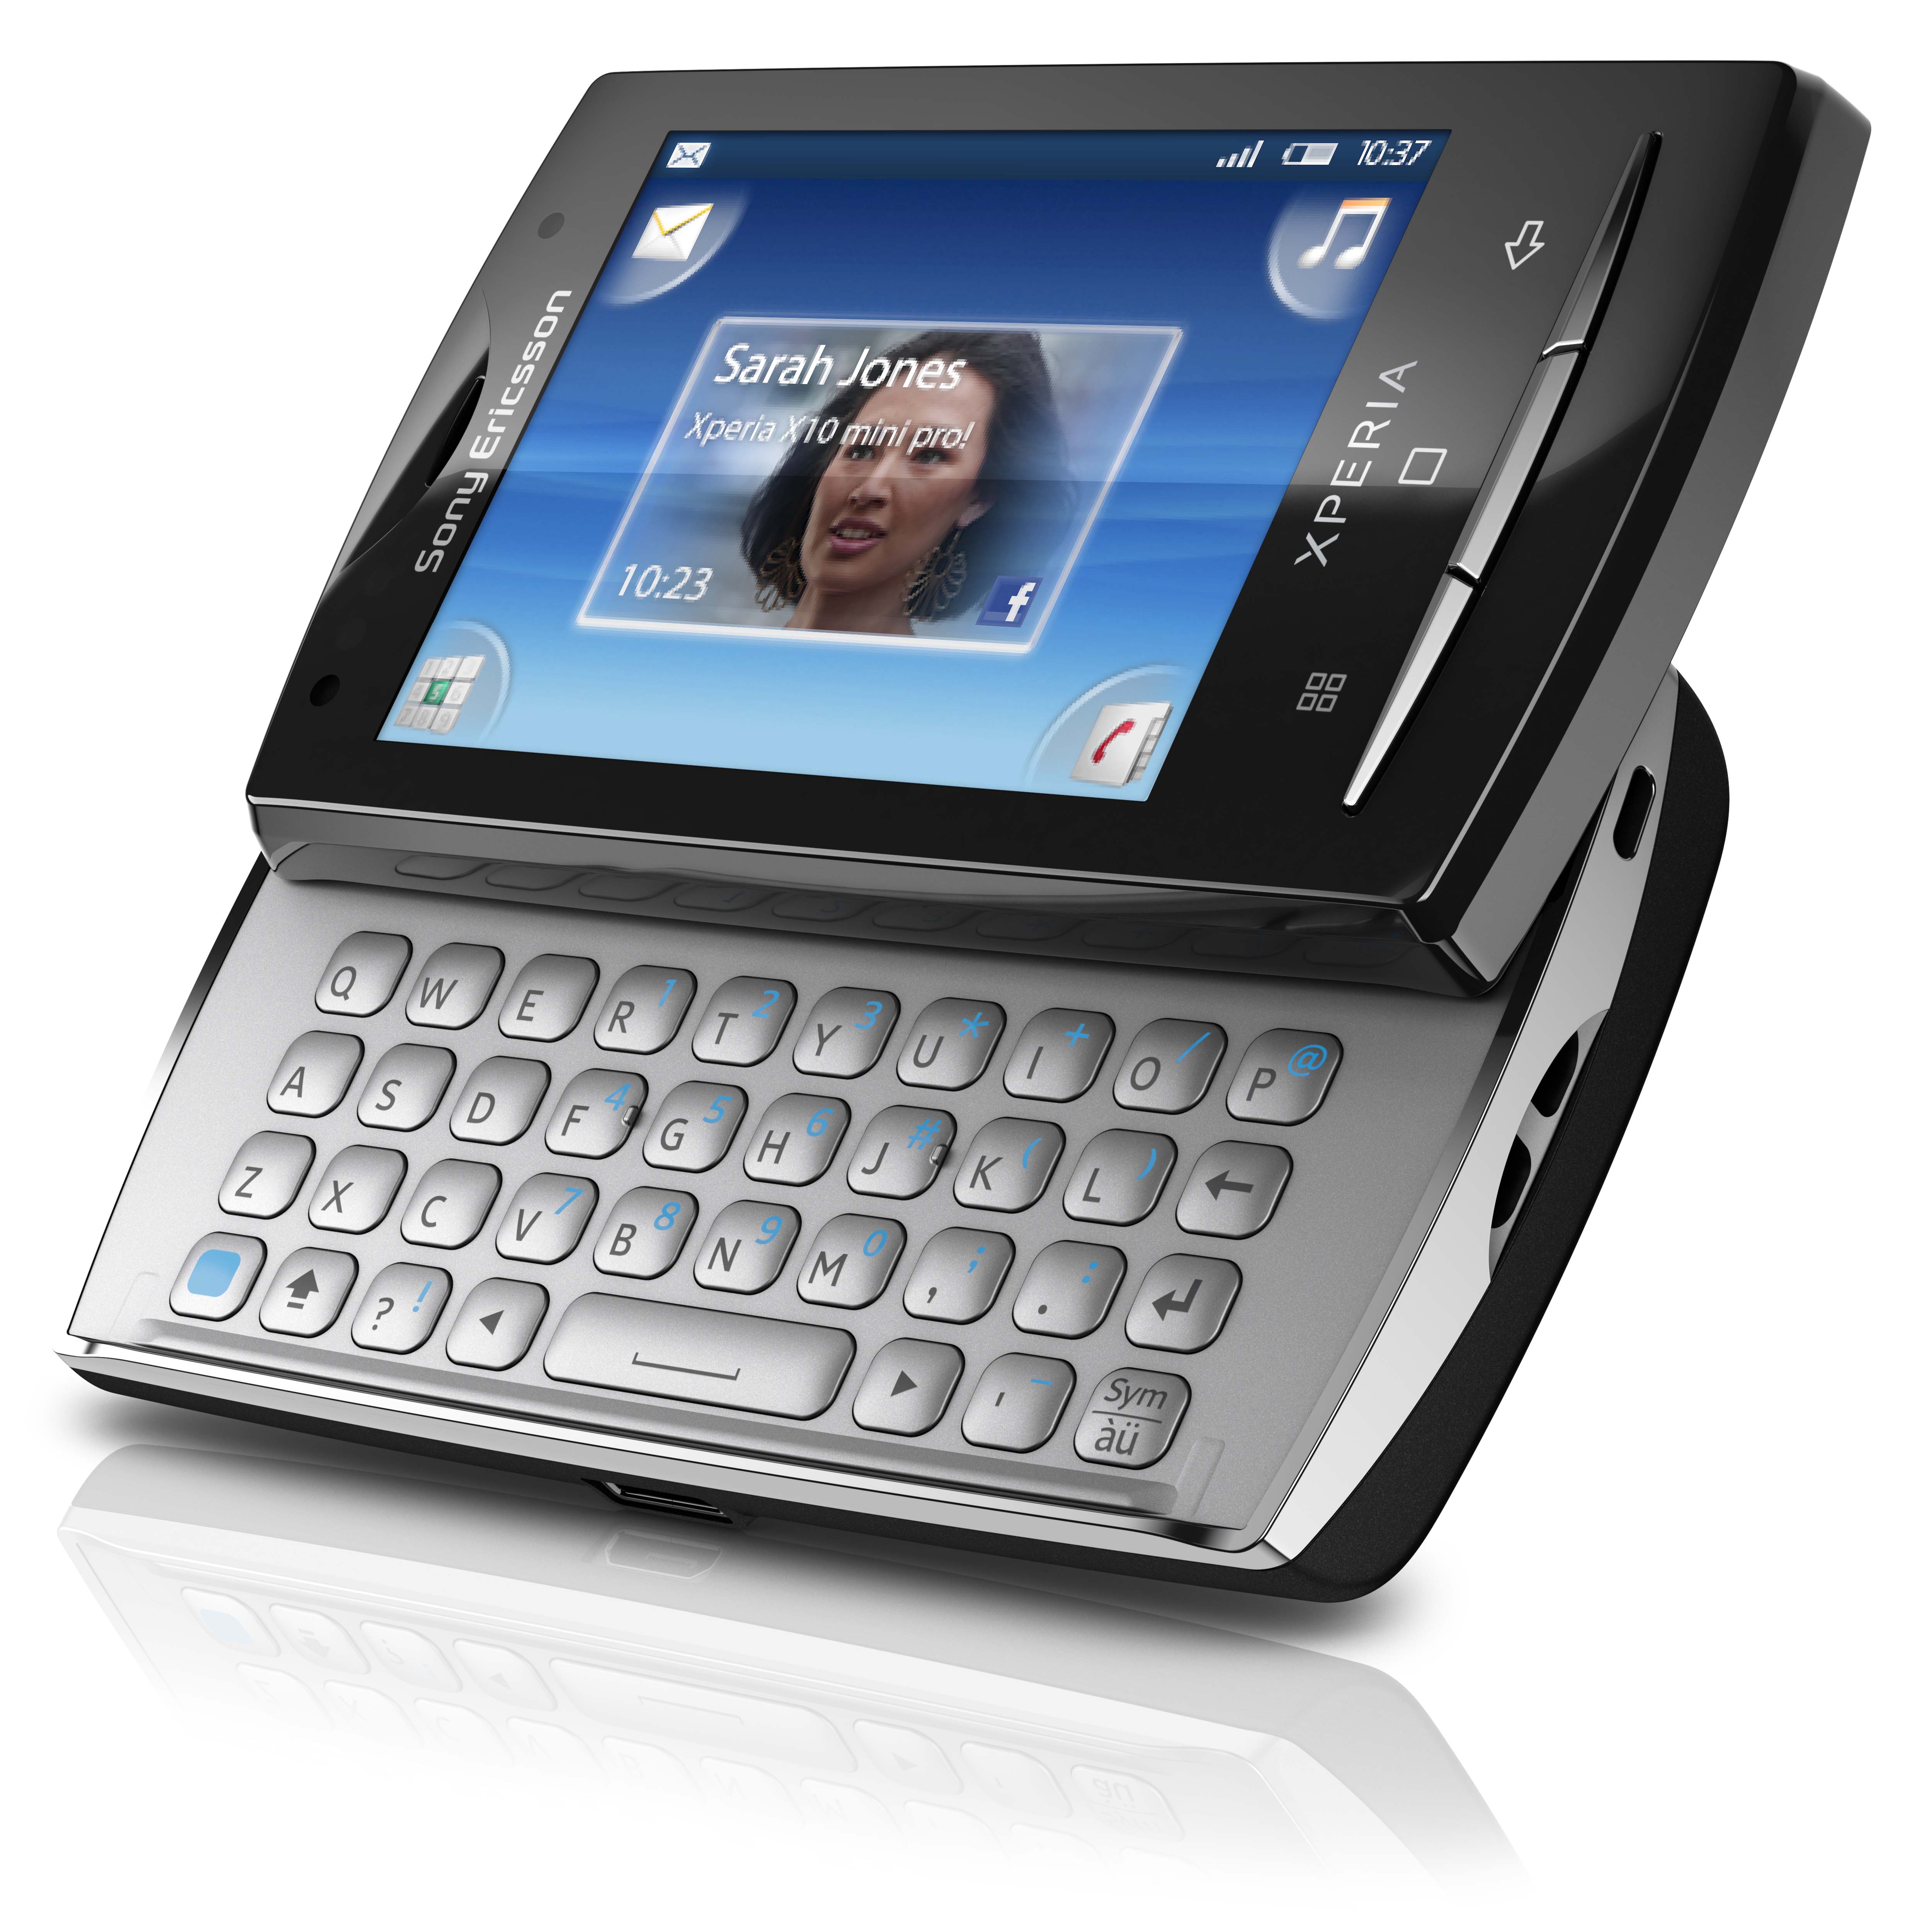 Toques para Sony-Ericsson Xperia X10 mini baixar gratis.